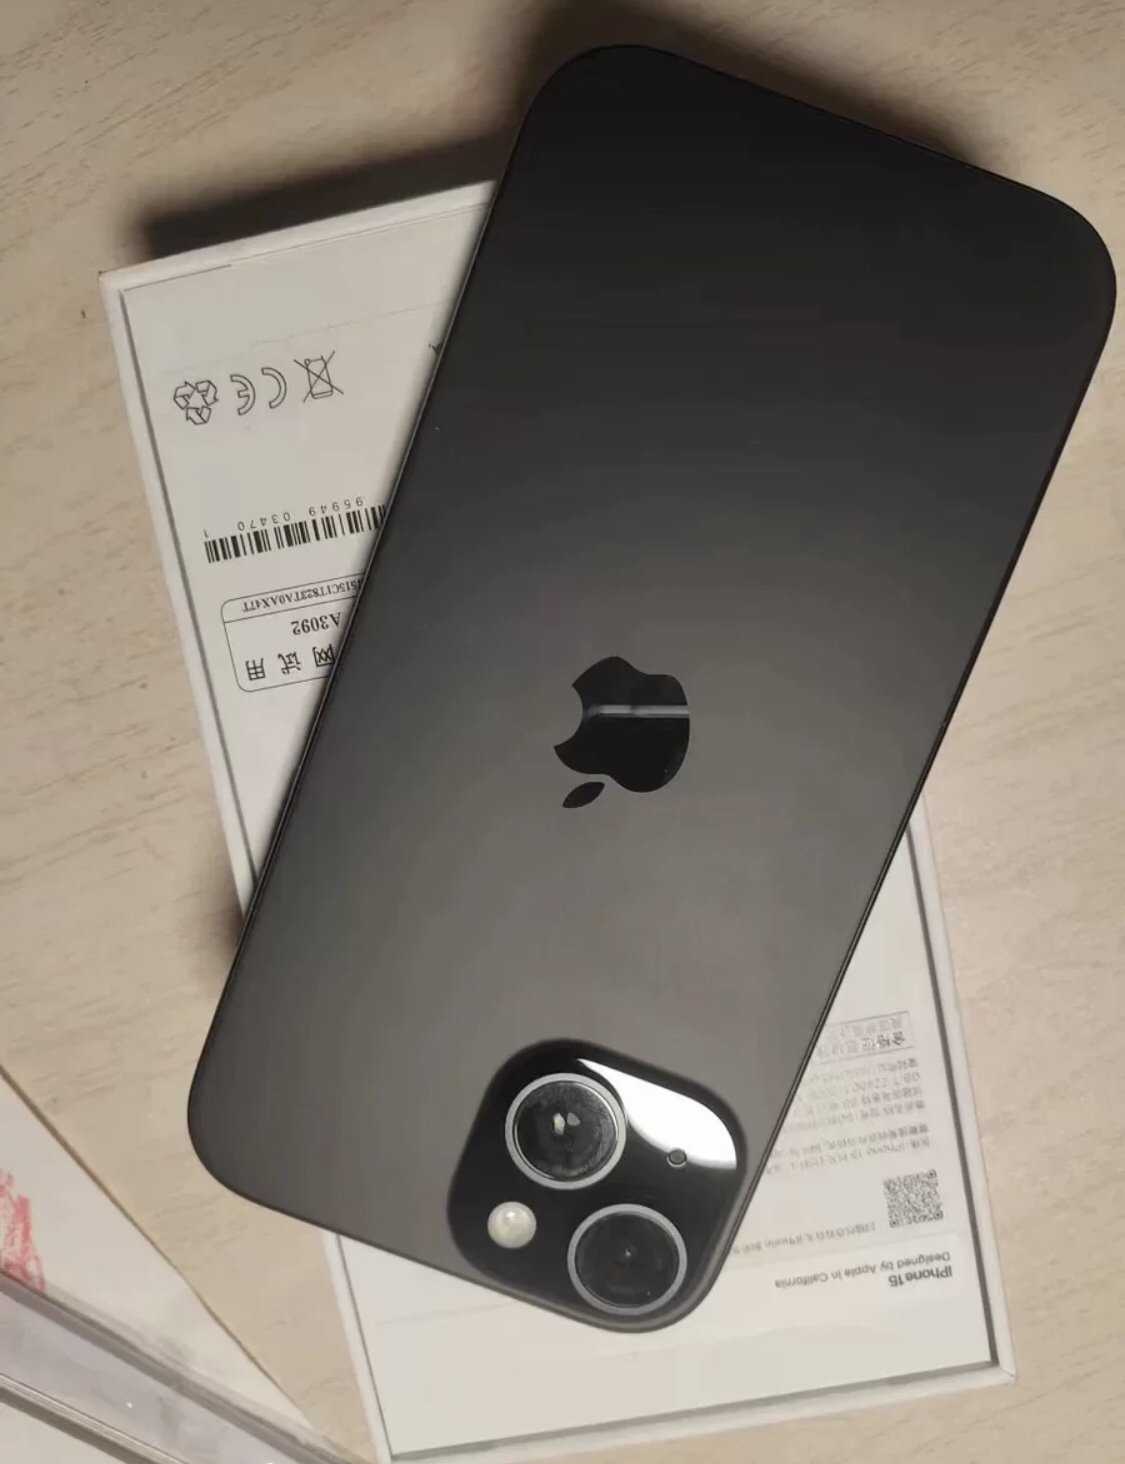 Apple iPhone 15 256G 黑色 移动联通电信手机 5G全网通手机晒单图